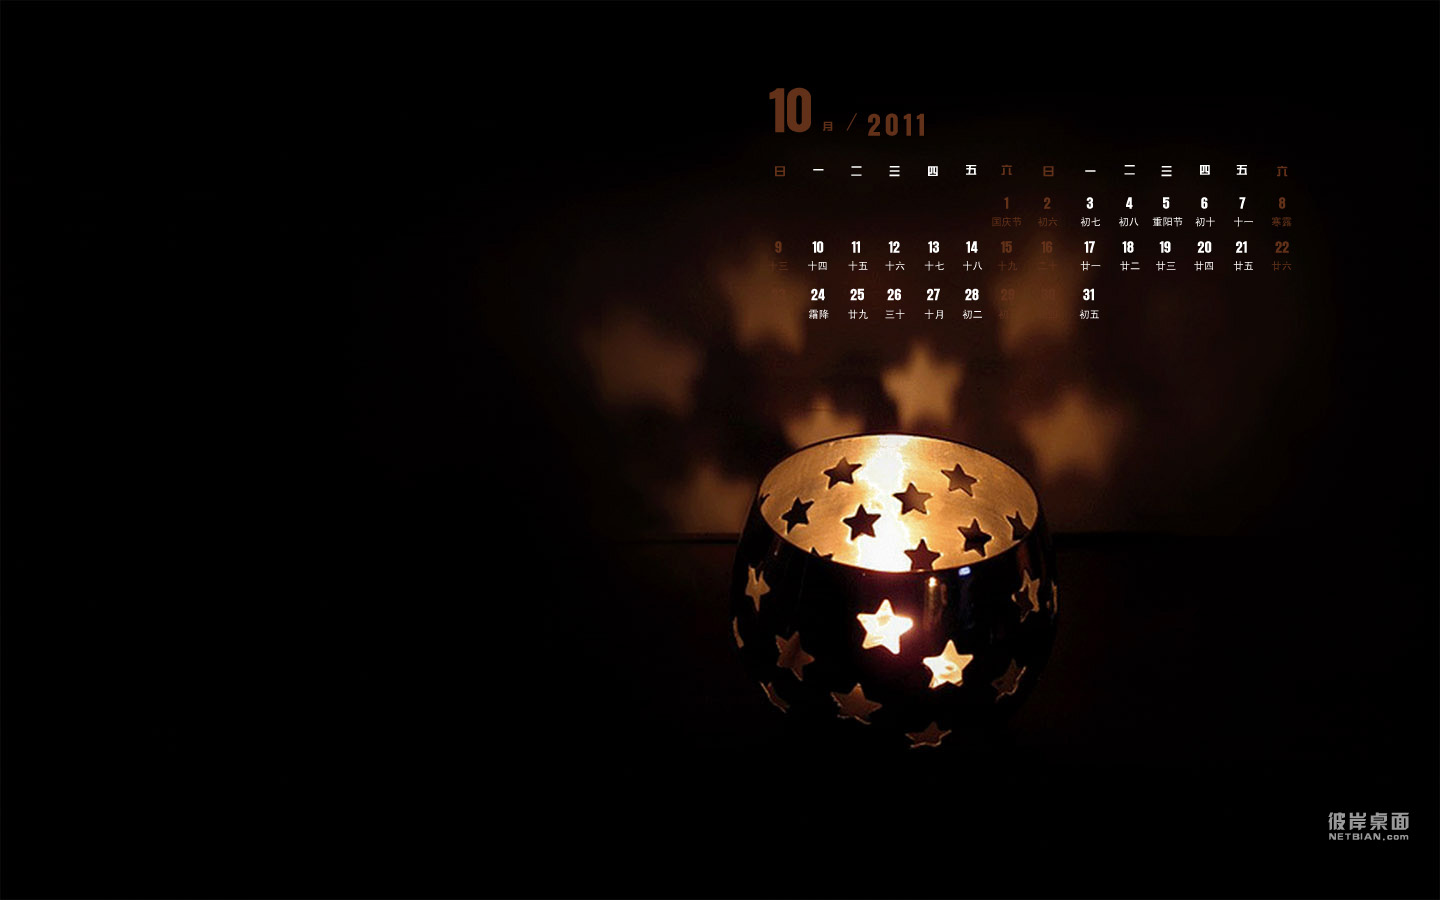 Mind Candlelight 2011 October Calendar Desktop Wallpaper